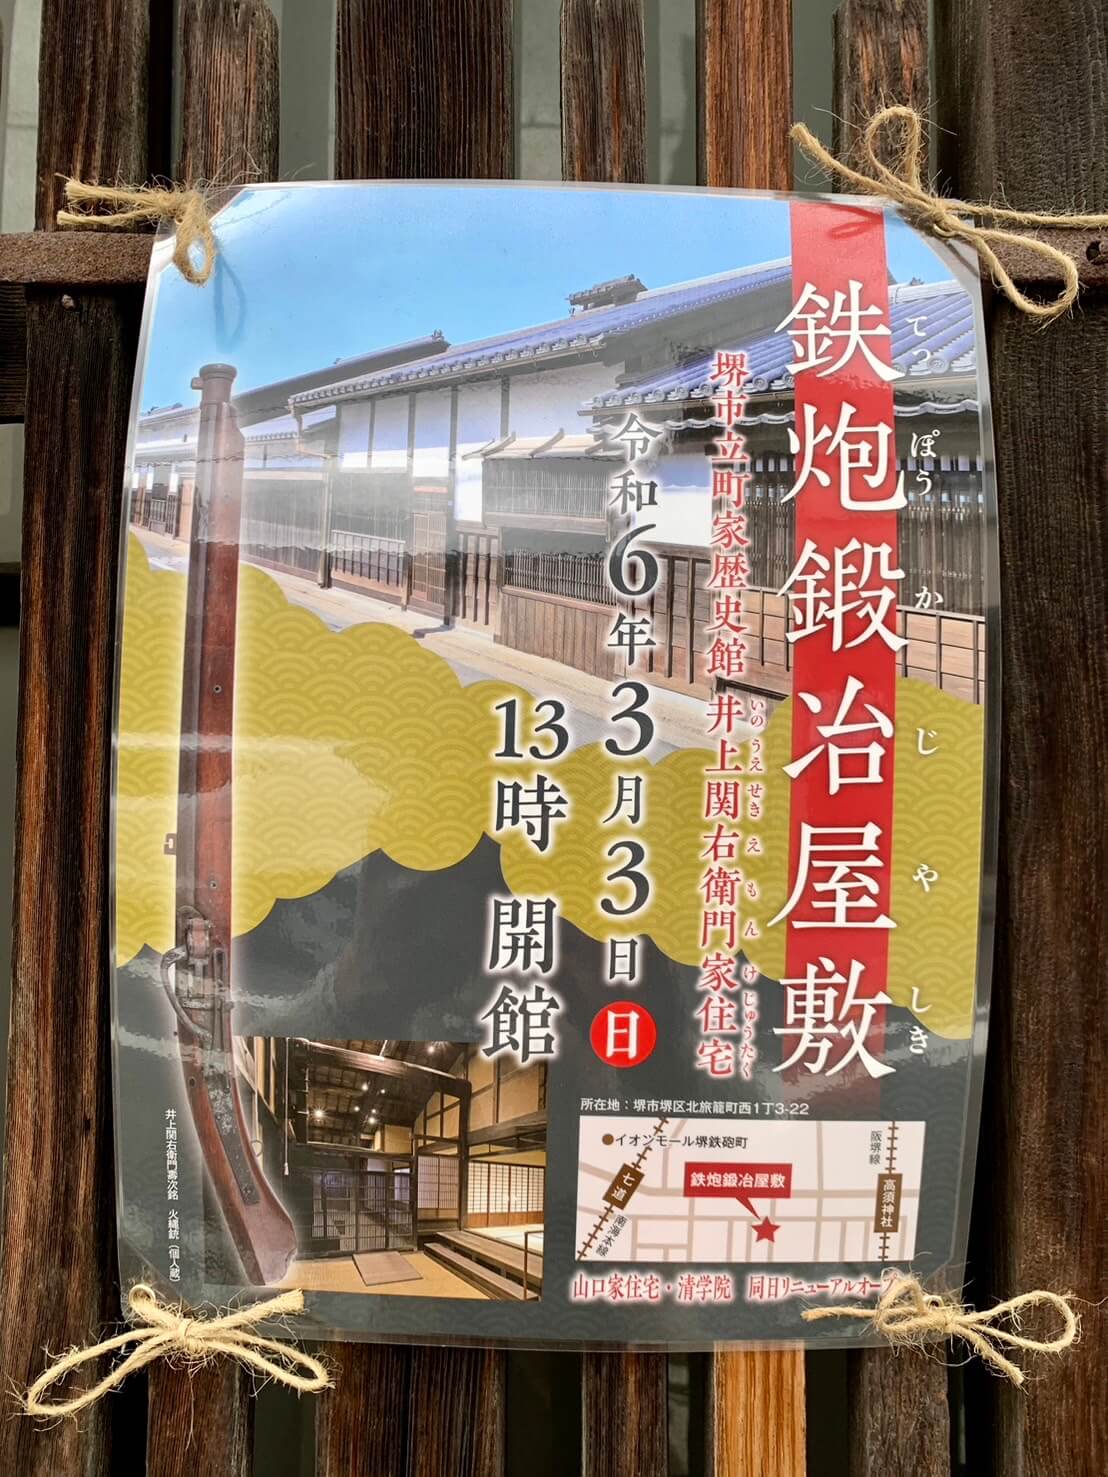 【トピックス】堺区･堺市指定有形文化財の井上関右衛門家住宅が町家歴史館『鉄炮鍛冶屋敷』としてグランドオープンするよ♪：